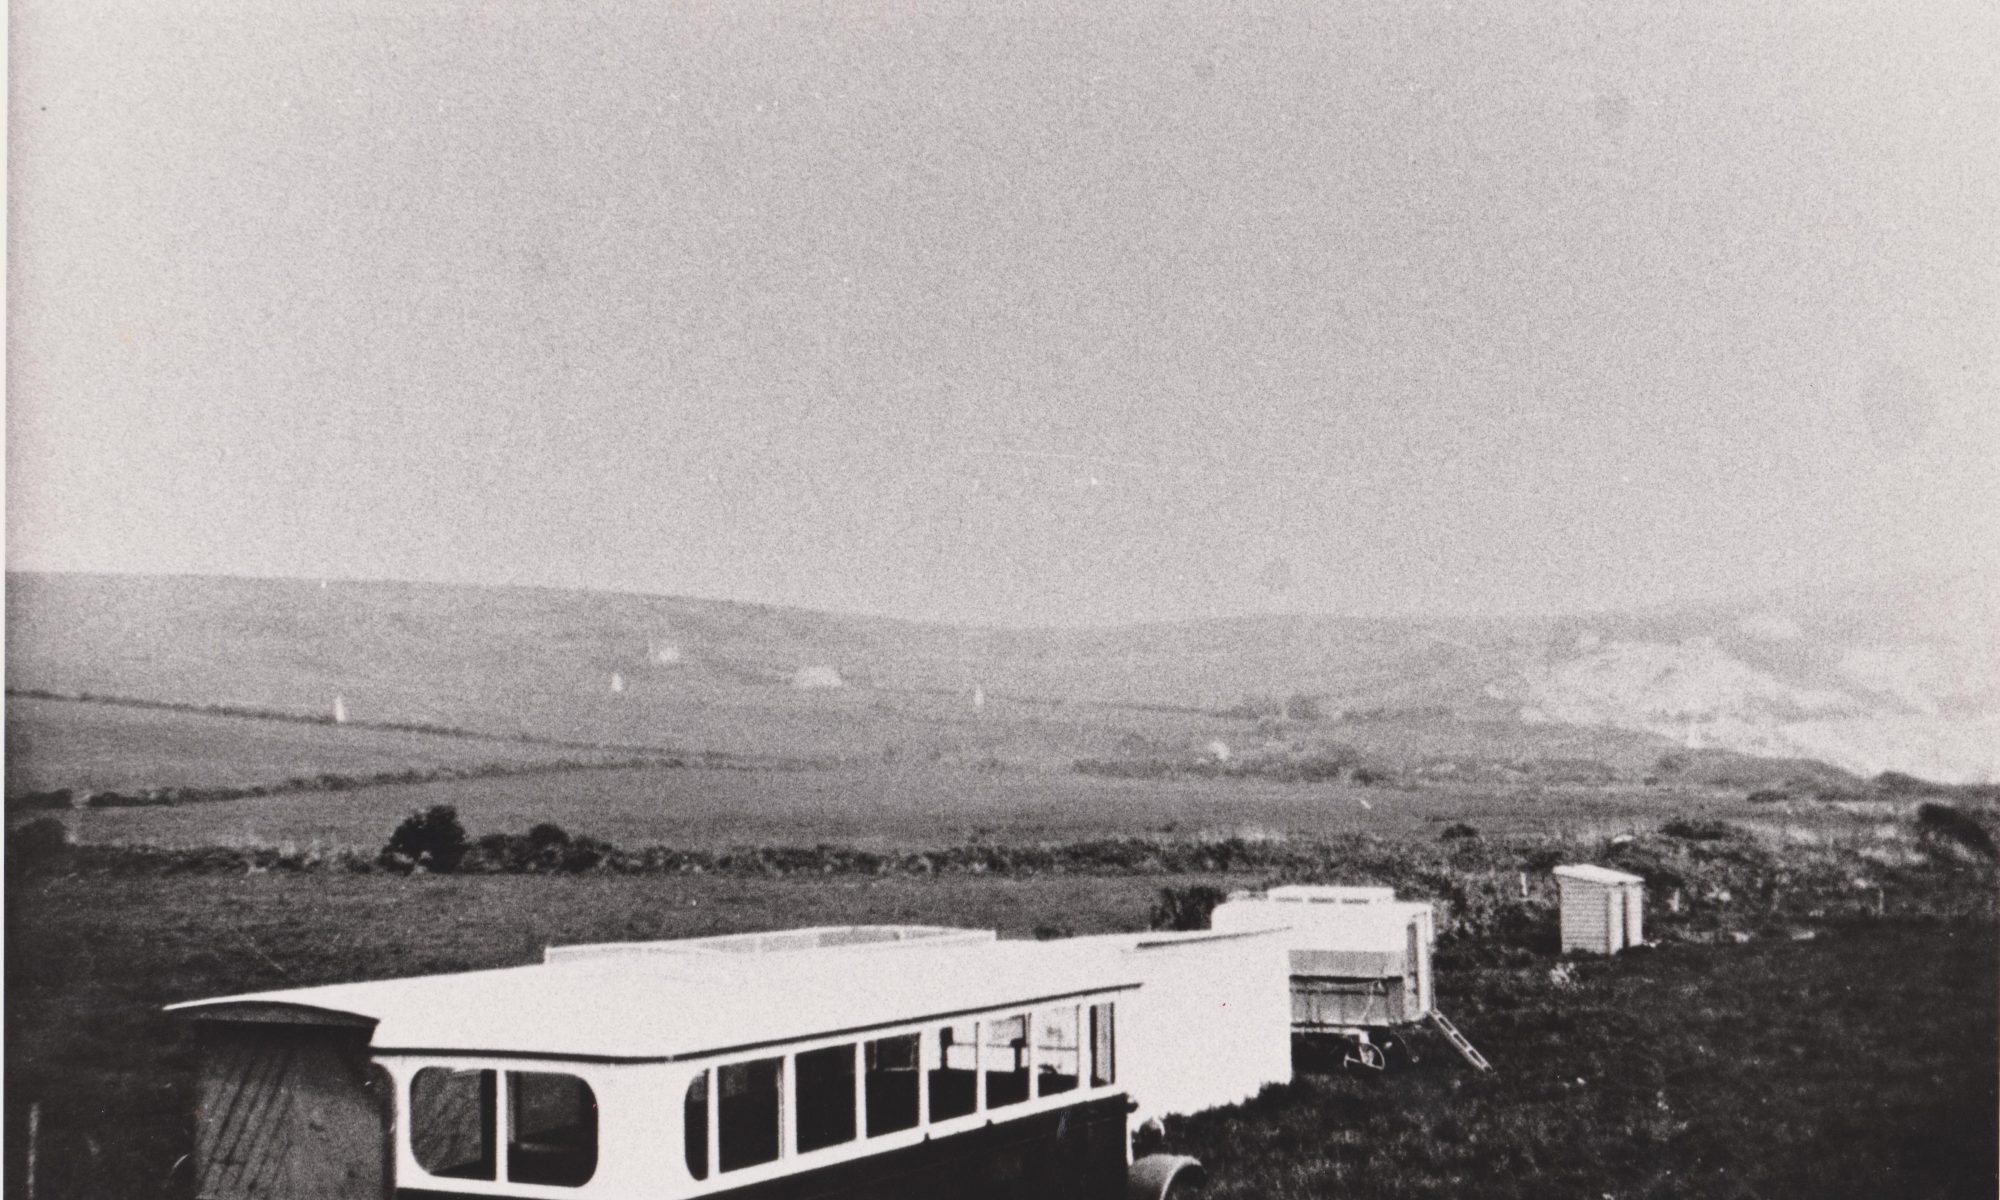 Old caravans in Ringstead 1930s